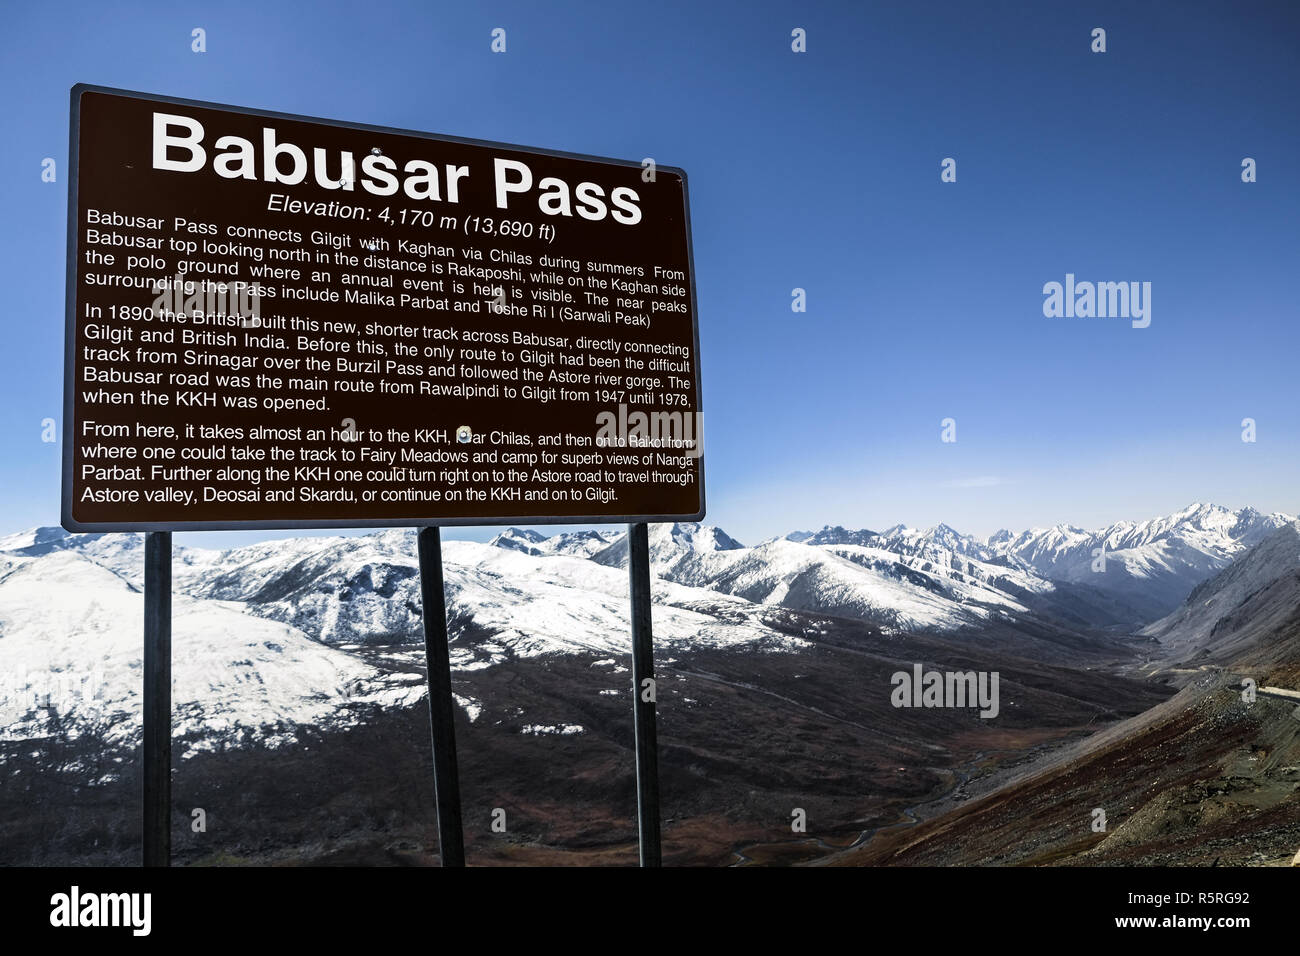 Un panneau d'information disant Barbusar Pass. Les provinces du Khyber Pakhtunkhwa, Gilgit Baltistan, au Pakistan. Banque D'Images